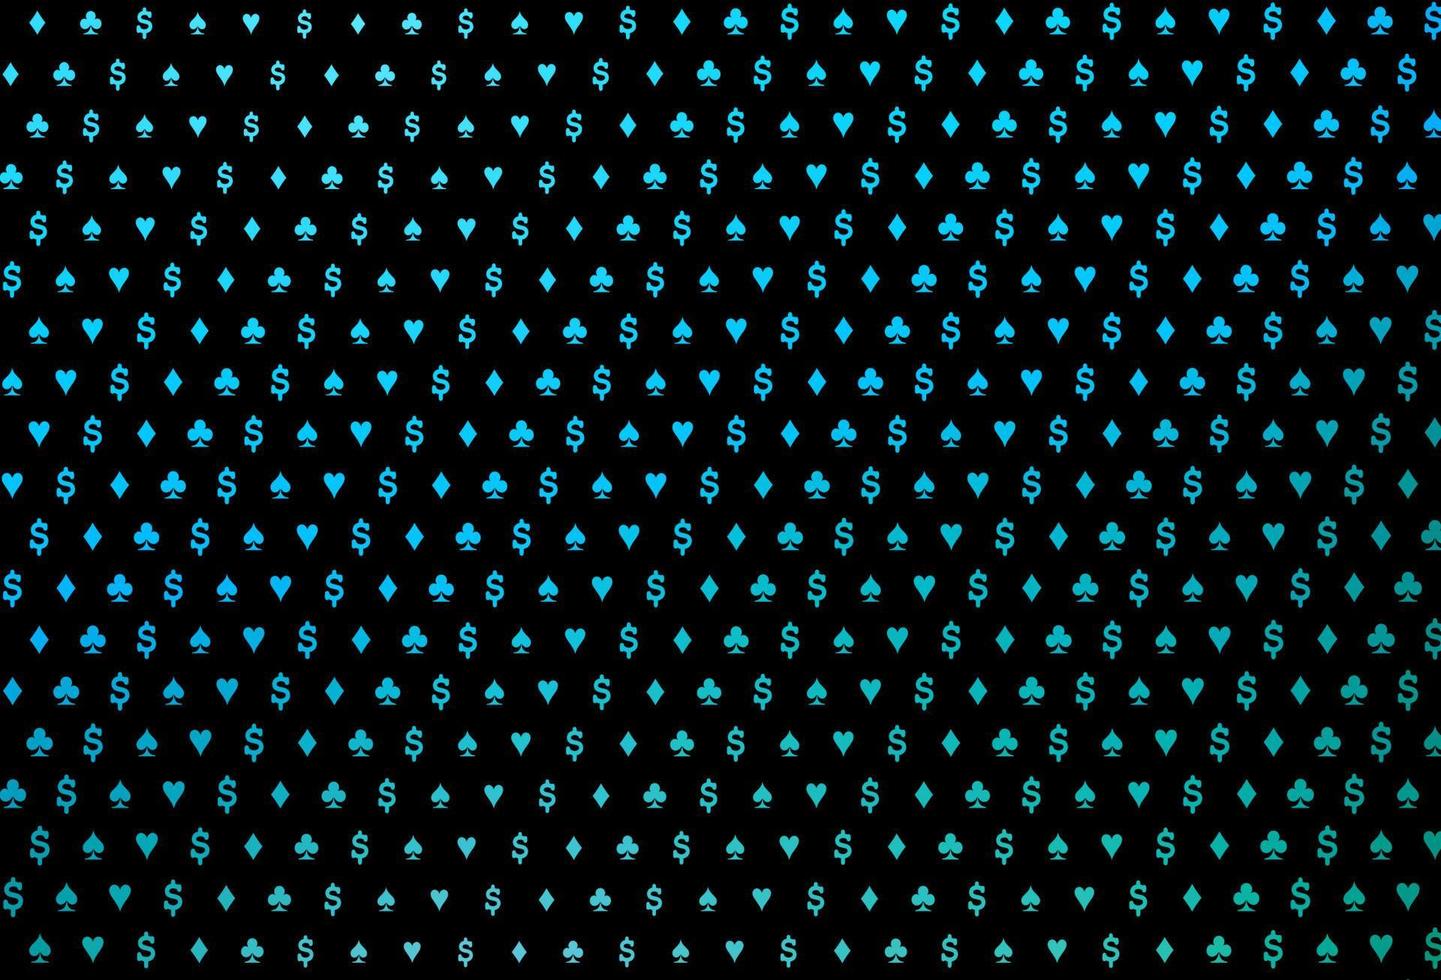 mörkblått, grönt vektormönster med symbol för kort. vektor